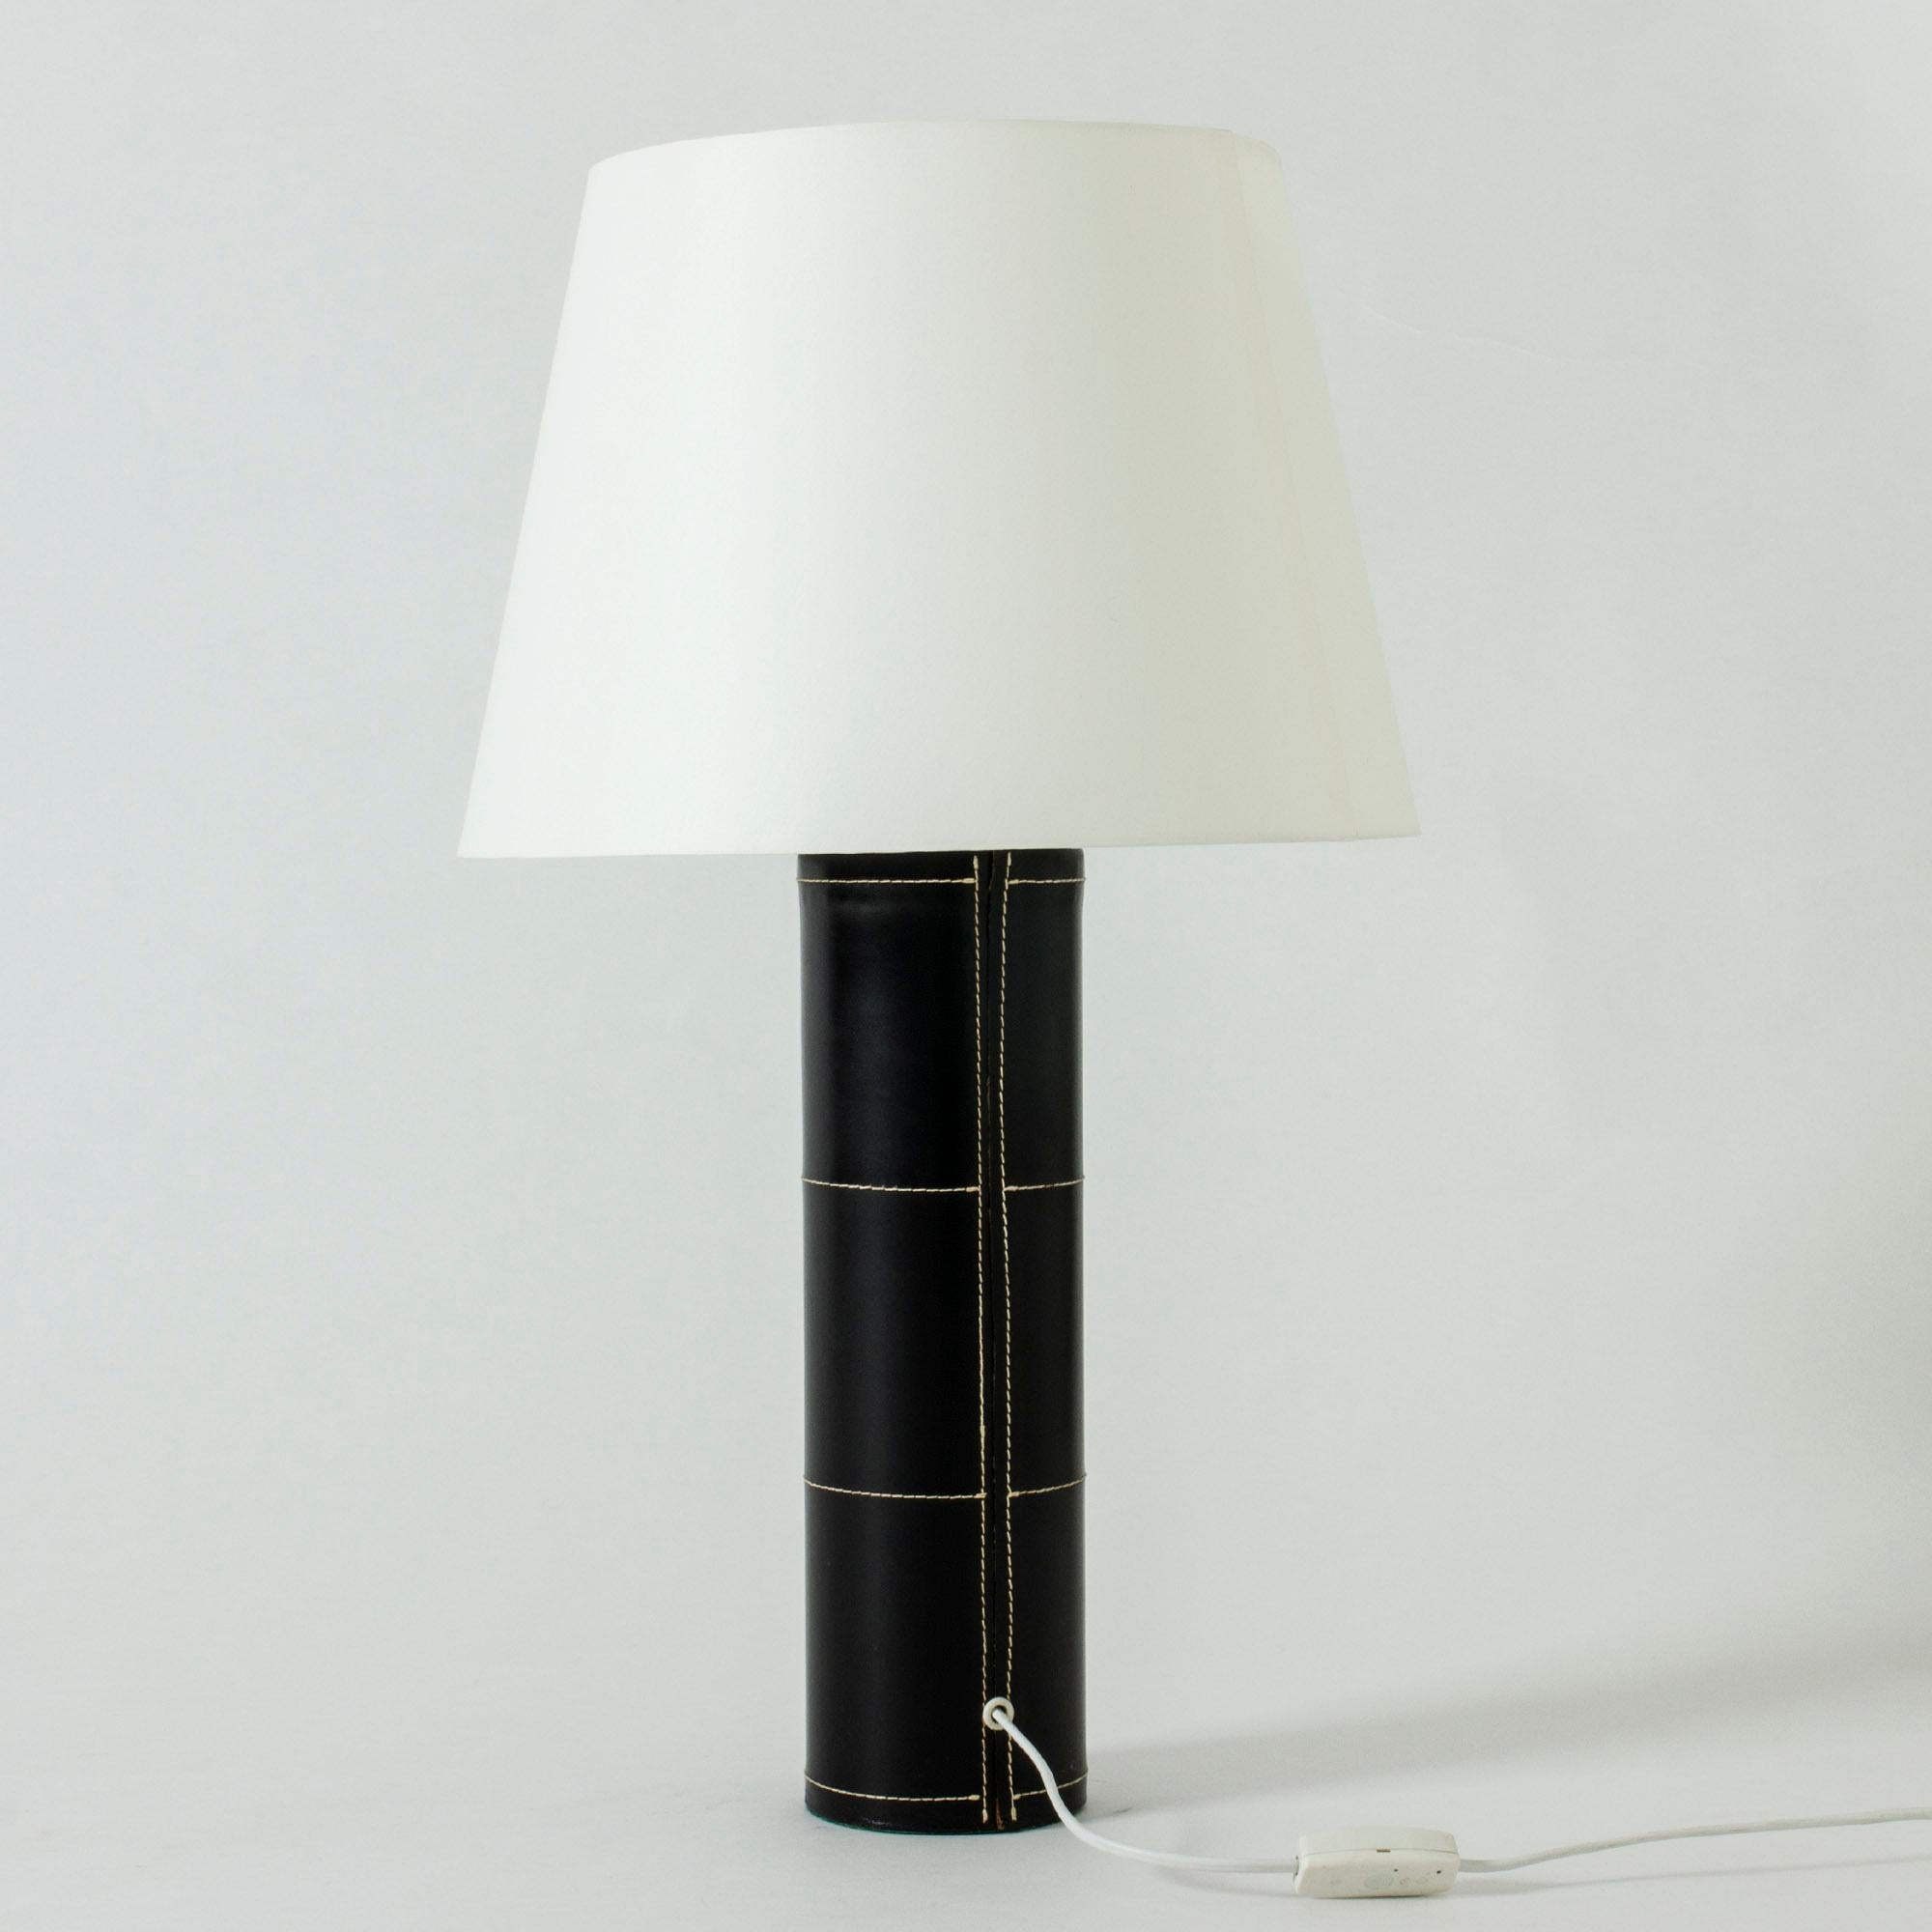 Grande lampe de table de Bergboms avec une base cylindrique habillée de cuir noir. Décoré de coutures blanches - un design minimaliste avec une finition de luxe.